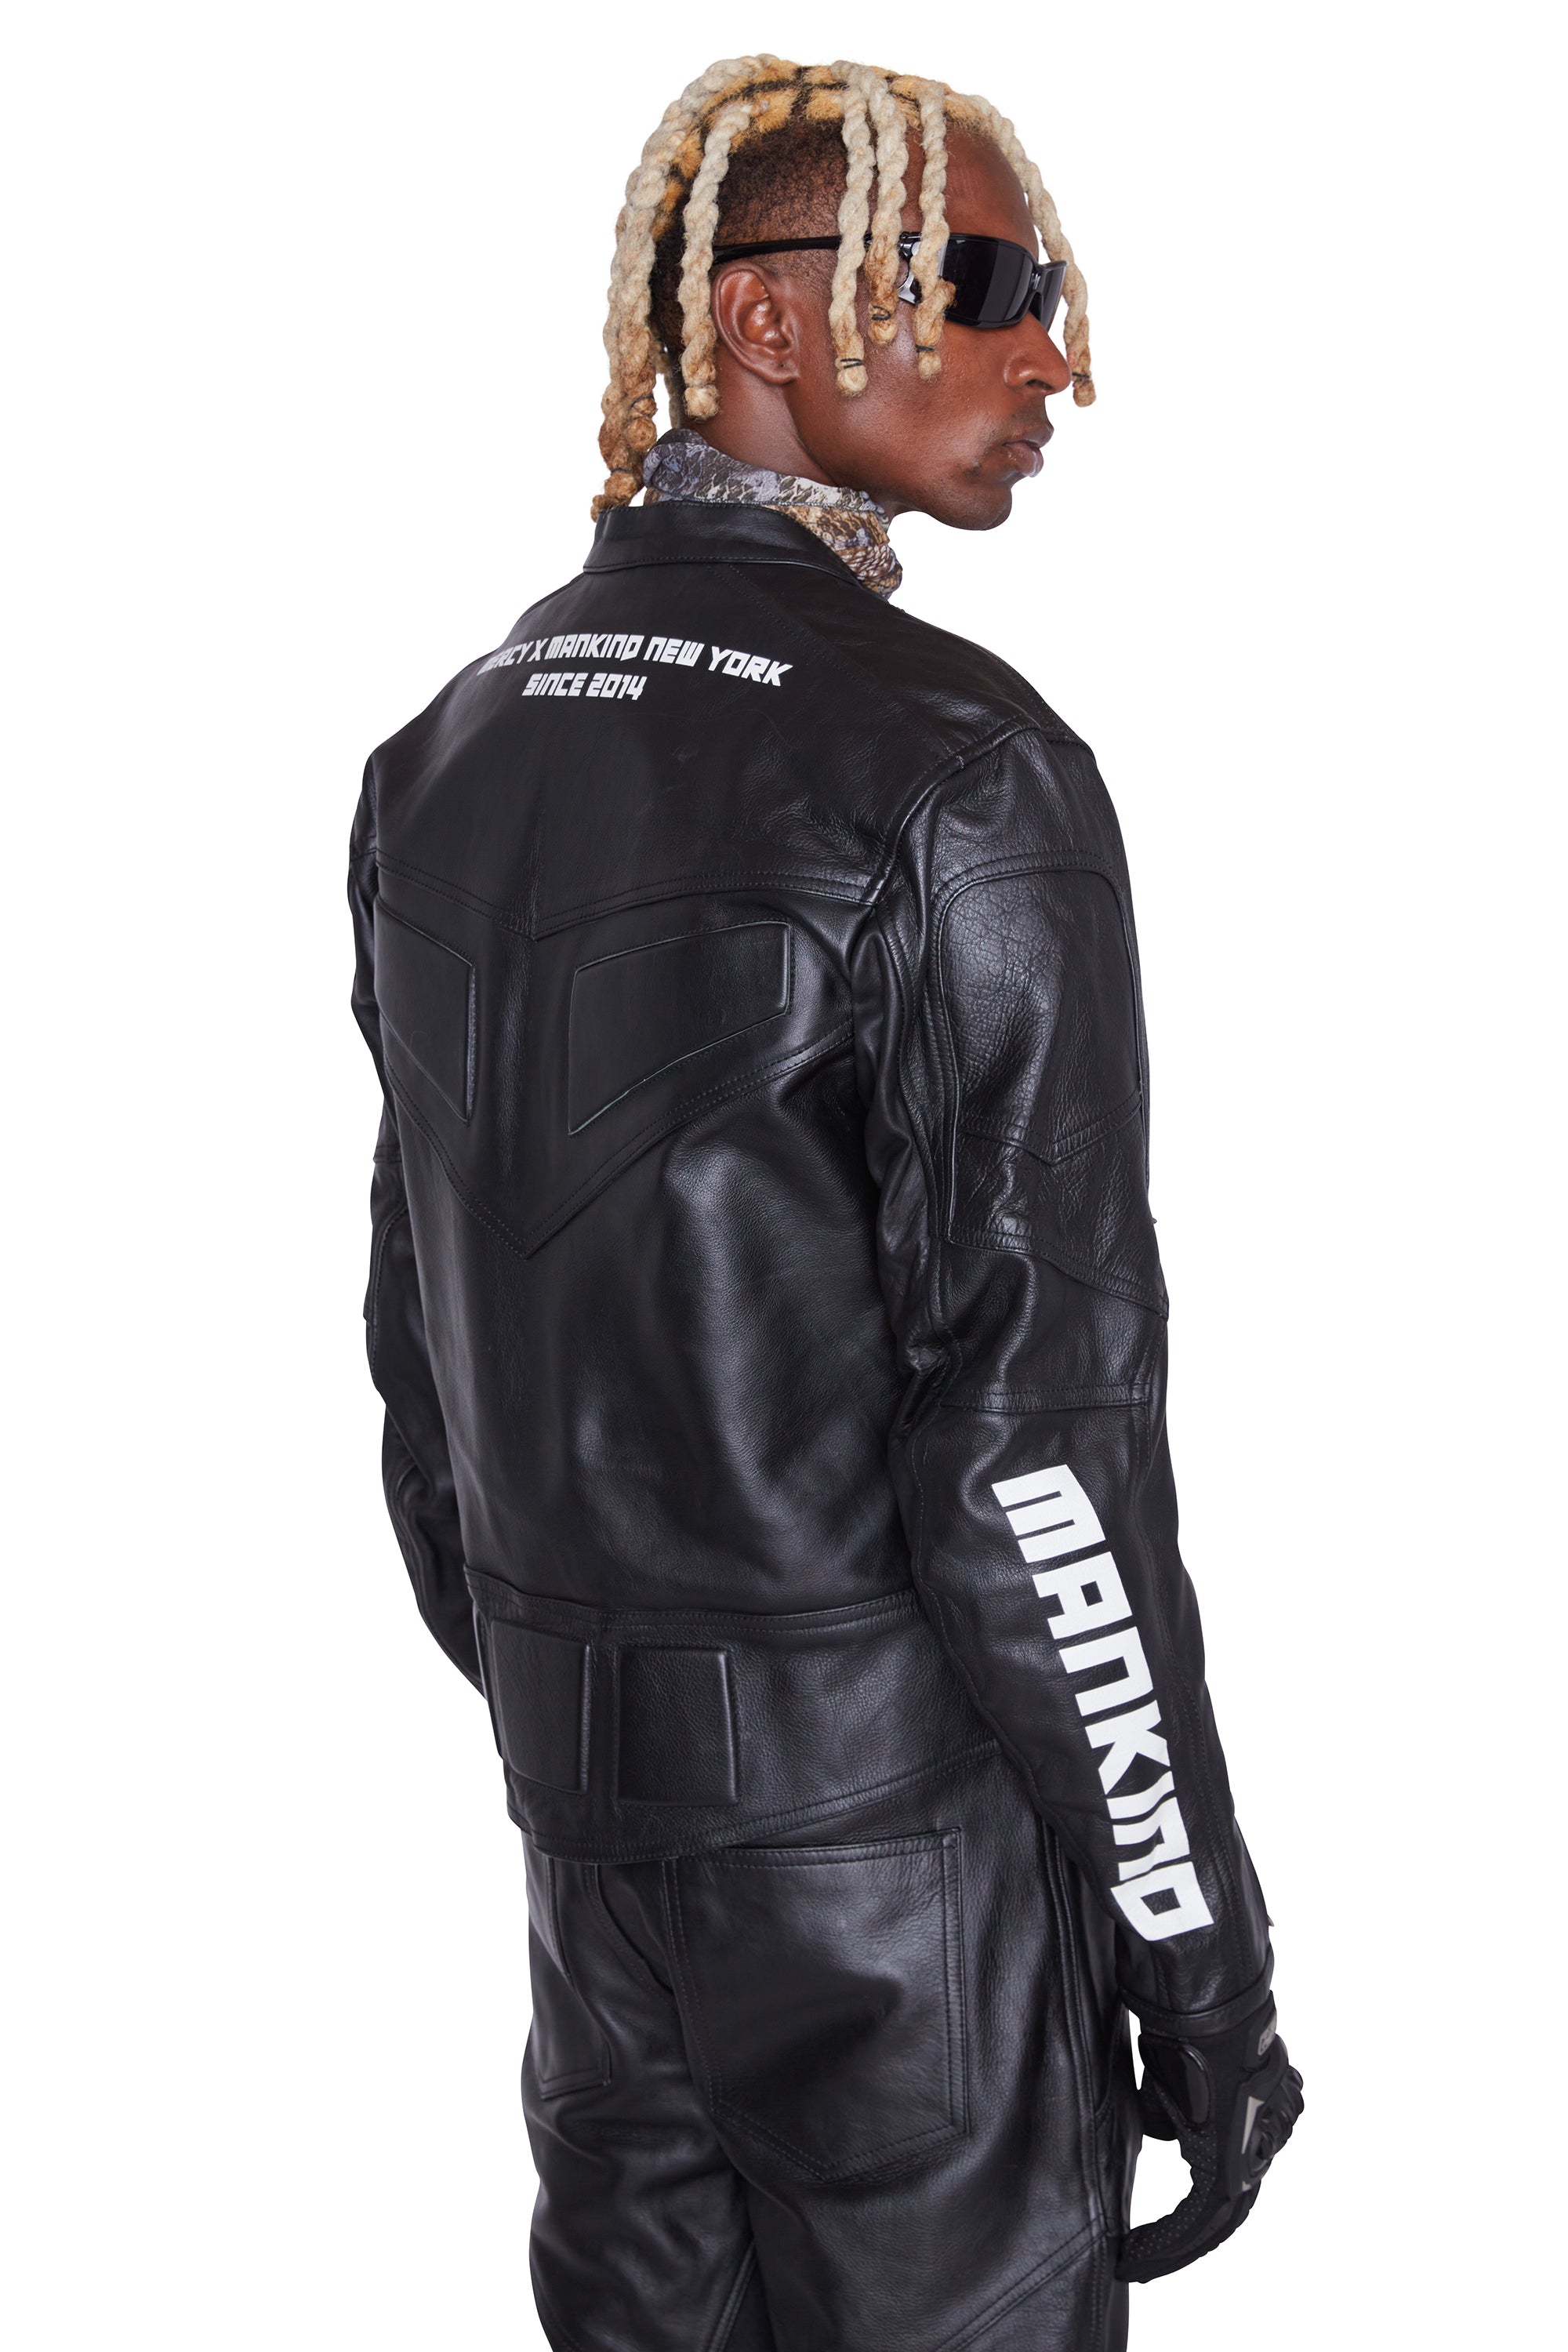 Moto Leather Racer Jacket (Black)